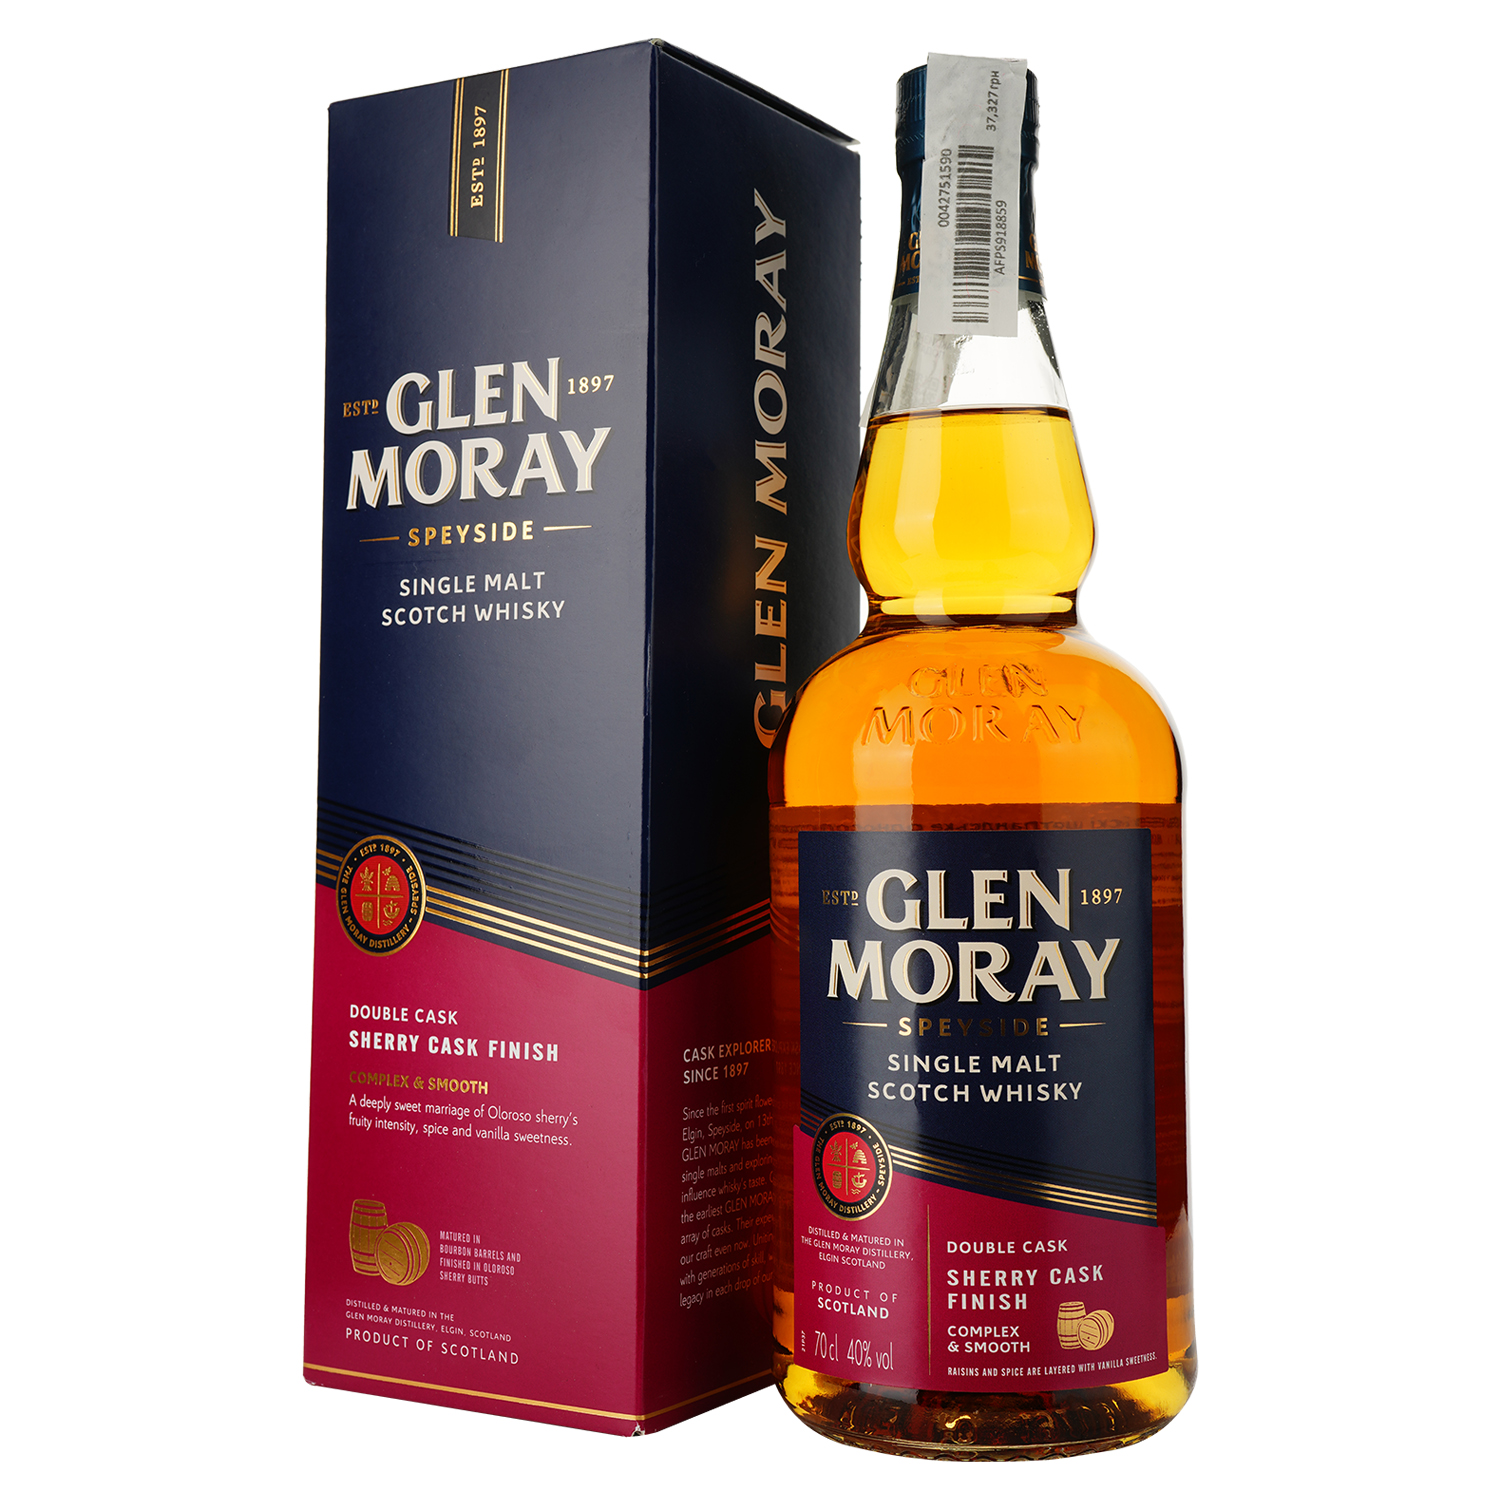 Віскі Glen Moray Single Malt Sherry Cask Finish, в подарунковій упаковці, 40%, 0,7 л (739153) - фото 1